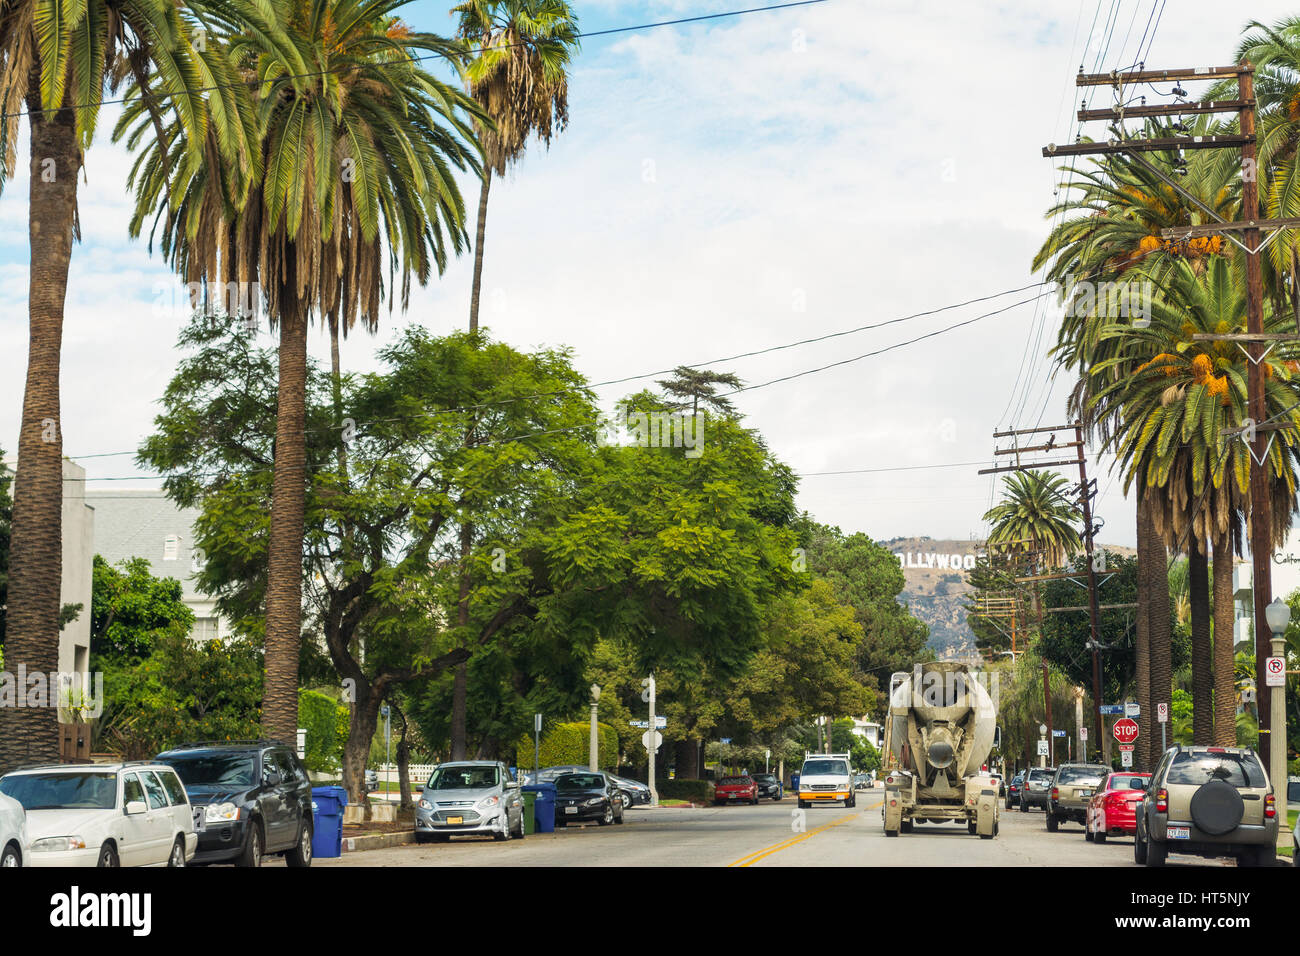 LOS ANGELES, California - 28 de octubre de 2016:cartel de Hollywood con palmeras en primer plano, California Foto de stock